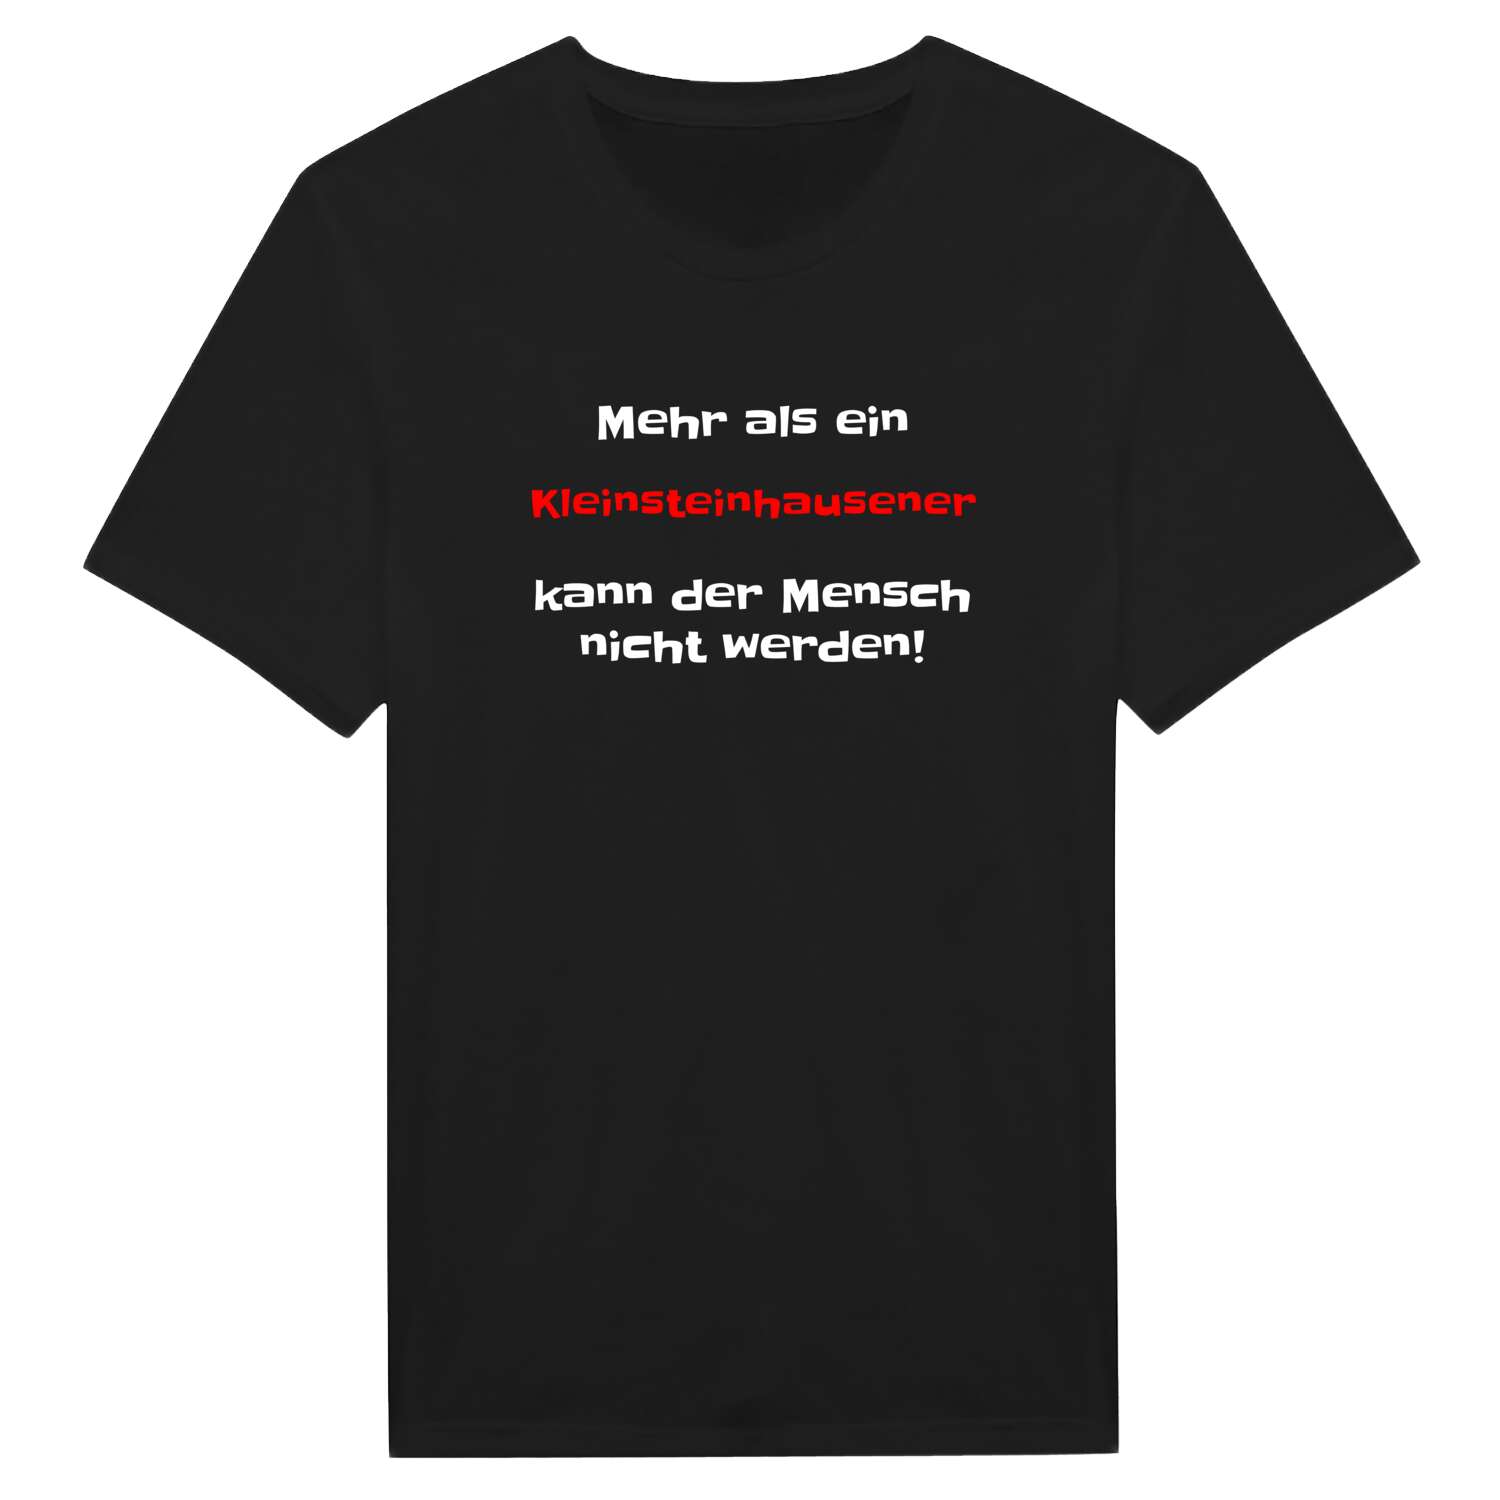 Kleinsteinhausen T-Shirt »Mehr als ein«